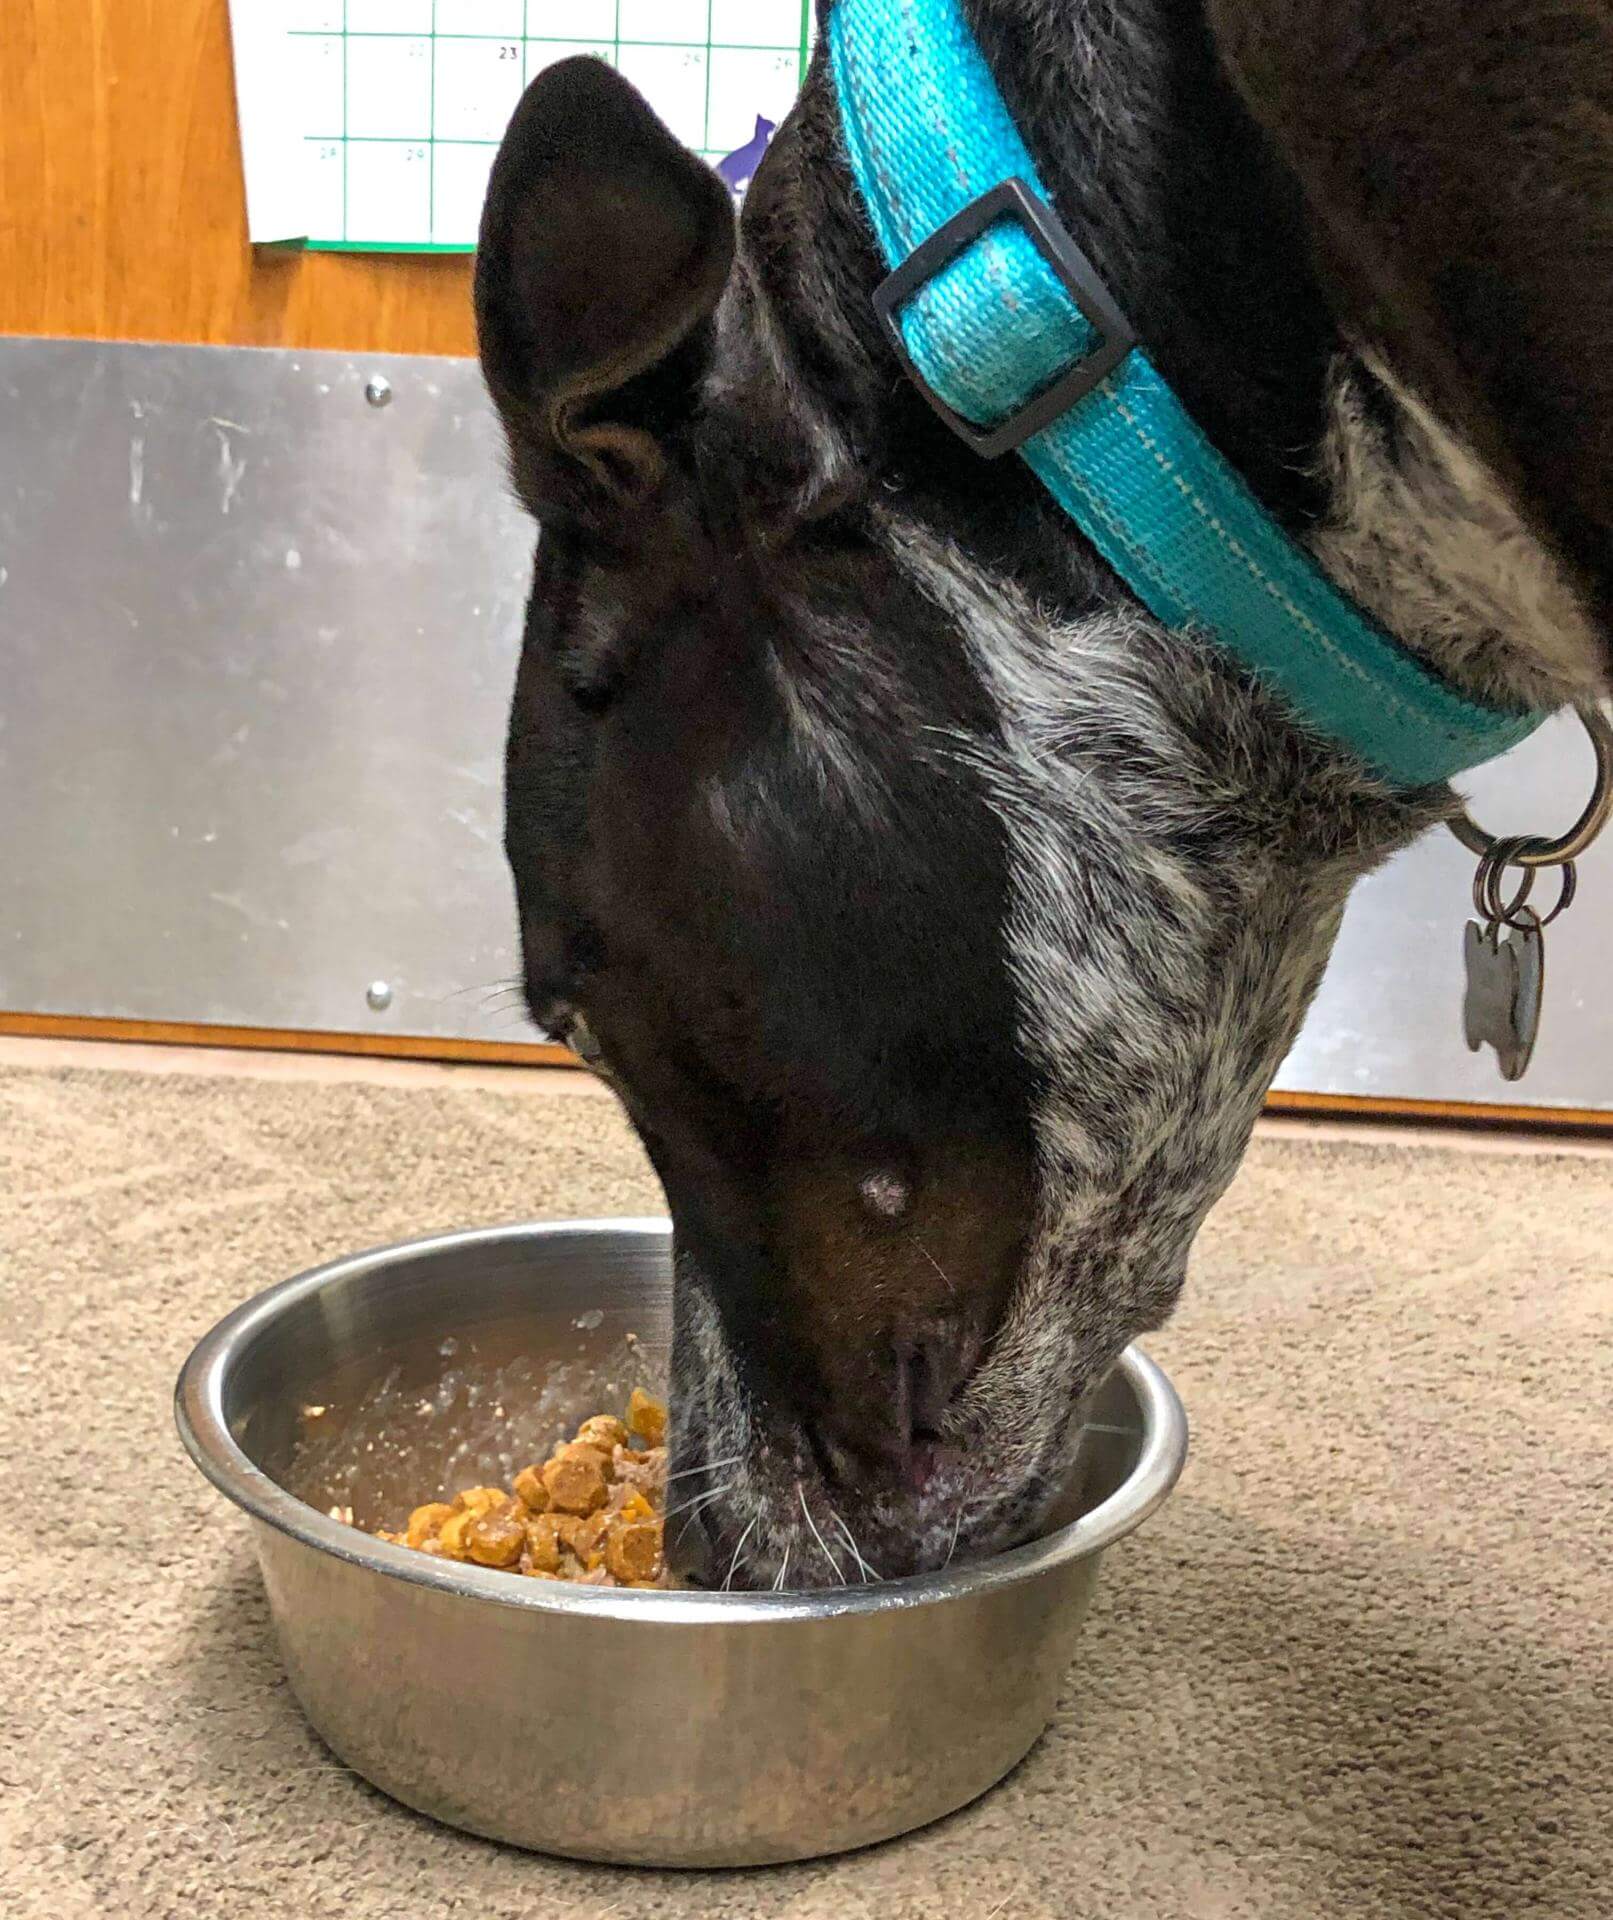 Loki dog eating from bowl of dog food